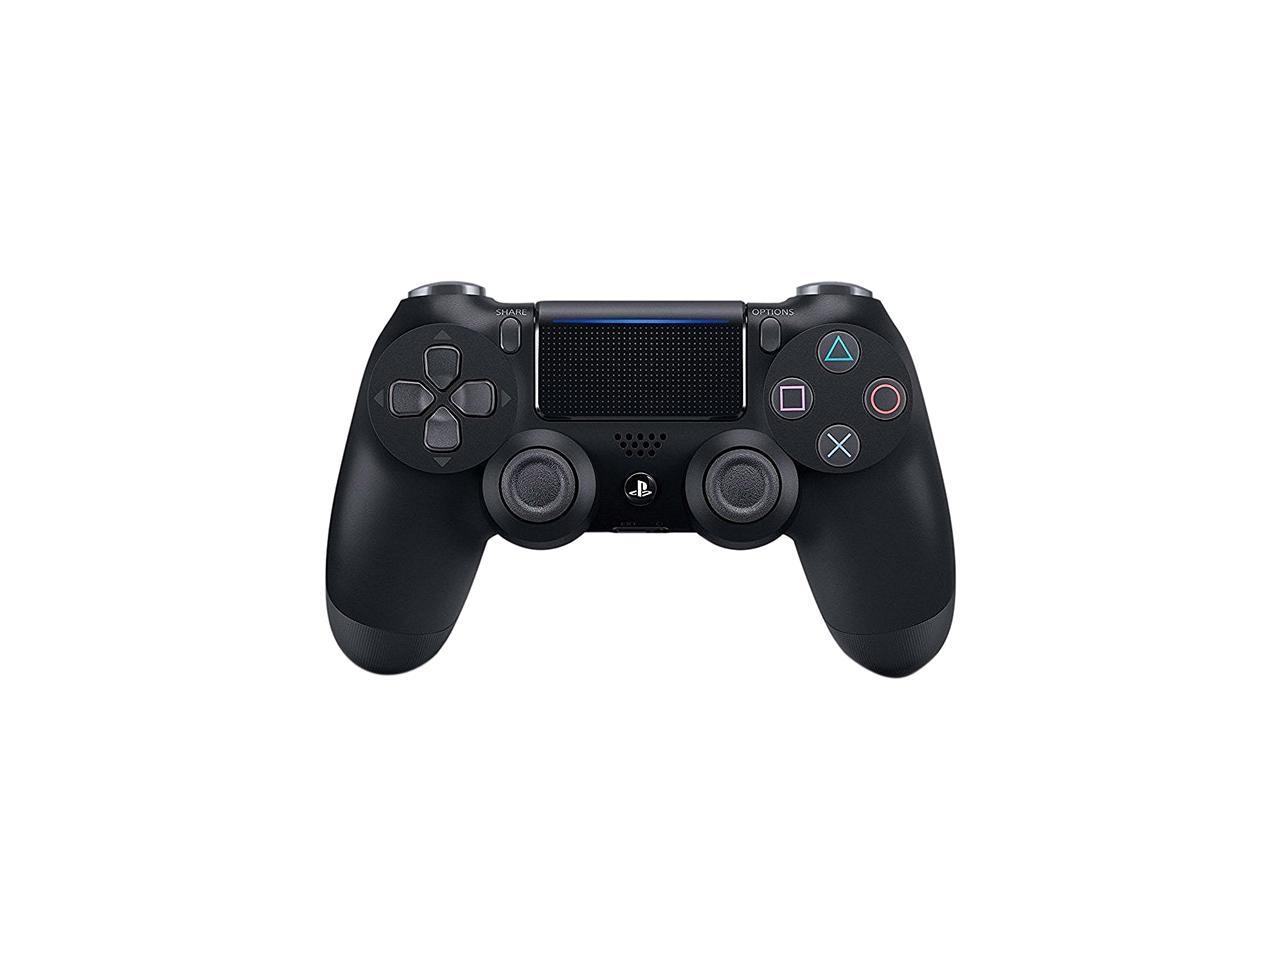 テレビ/映像機器 その他 DualShock 4 Wireless Controller for PlayStation 4 - Jet Black (CUH 